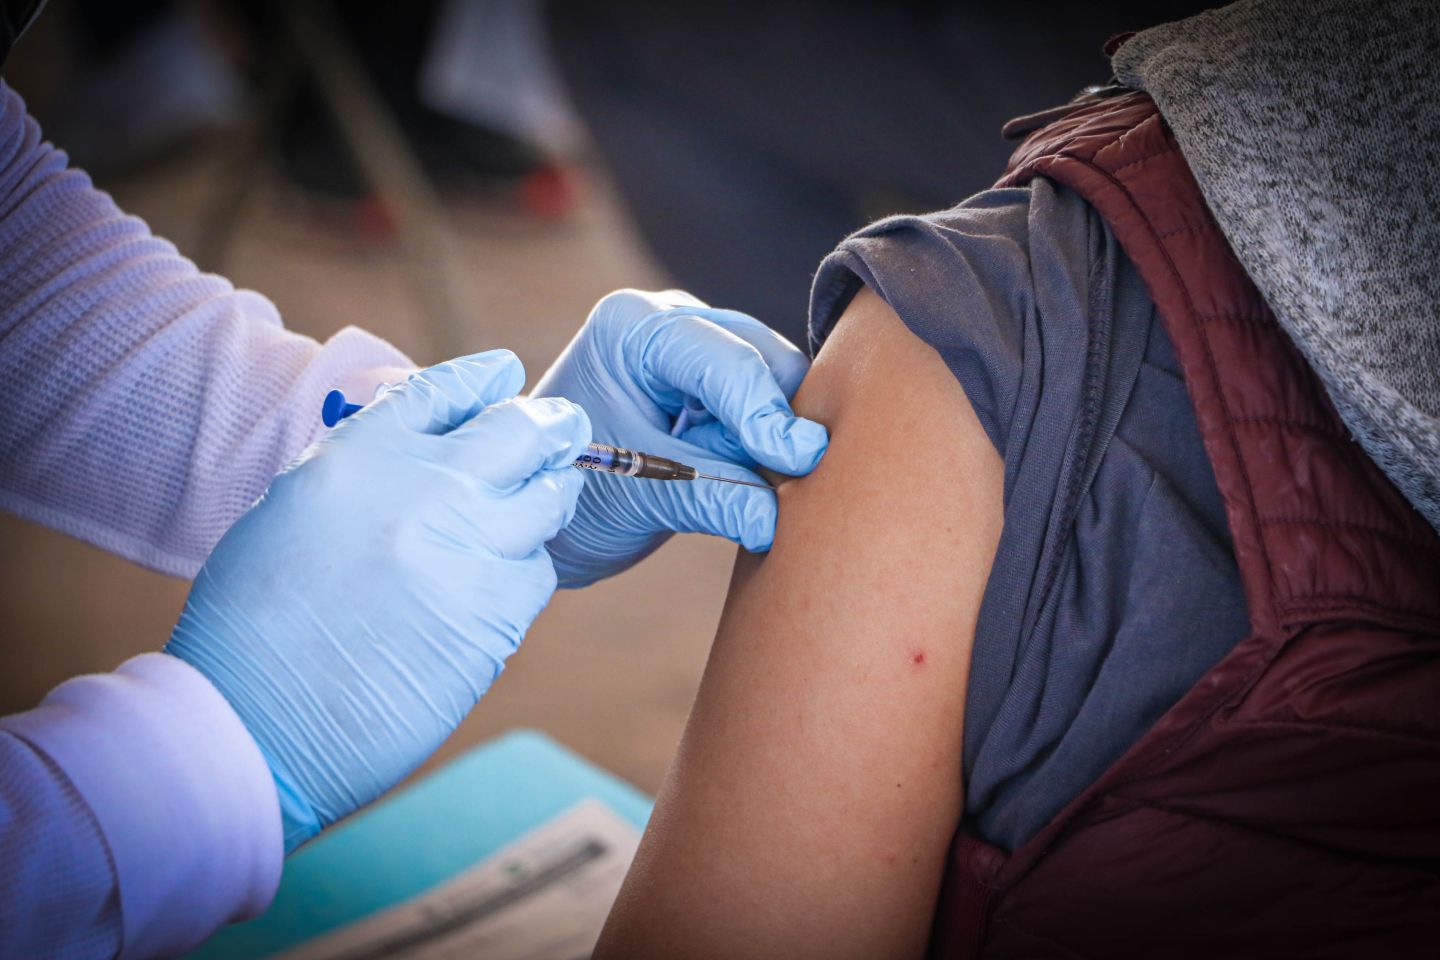 

Chimalhuacán, Edomex y federación aplicarán primera dosis de vacuna contra el COVID-19 a menores con comorbilidades
